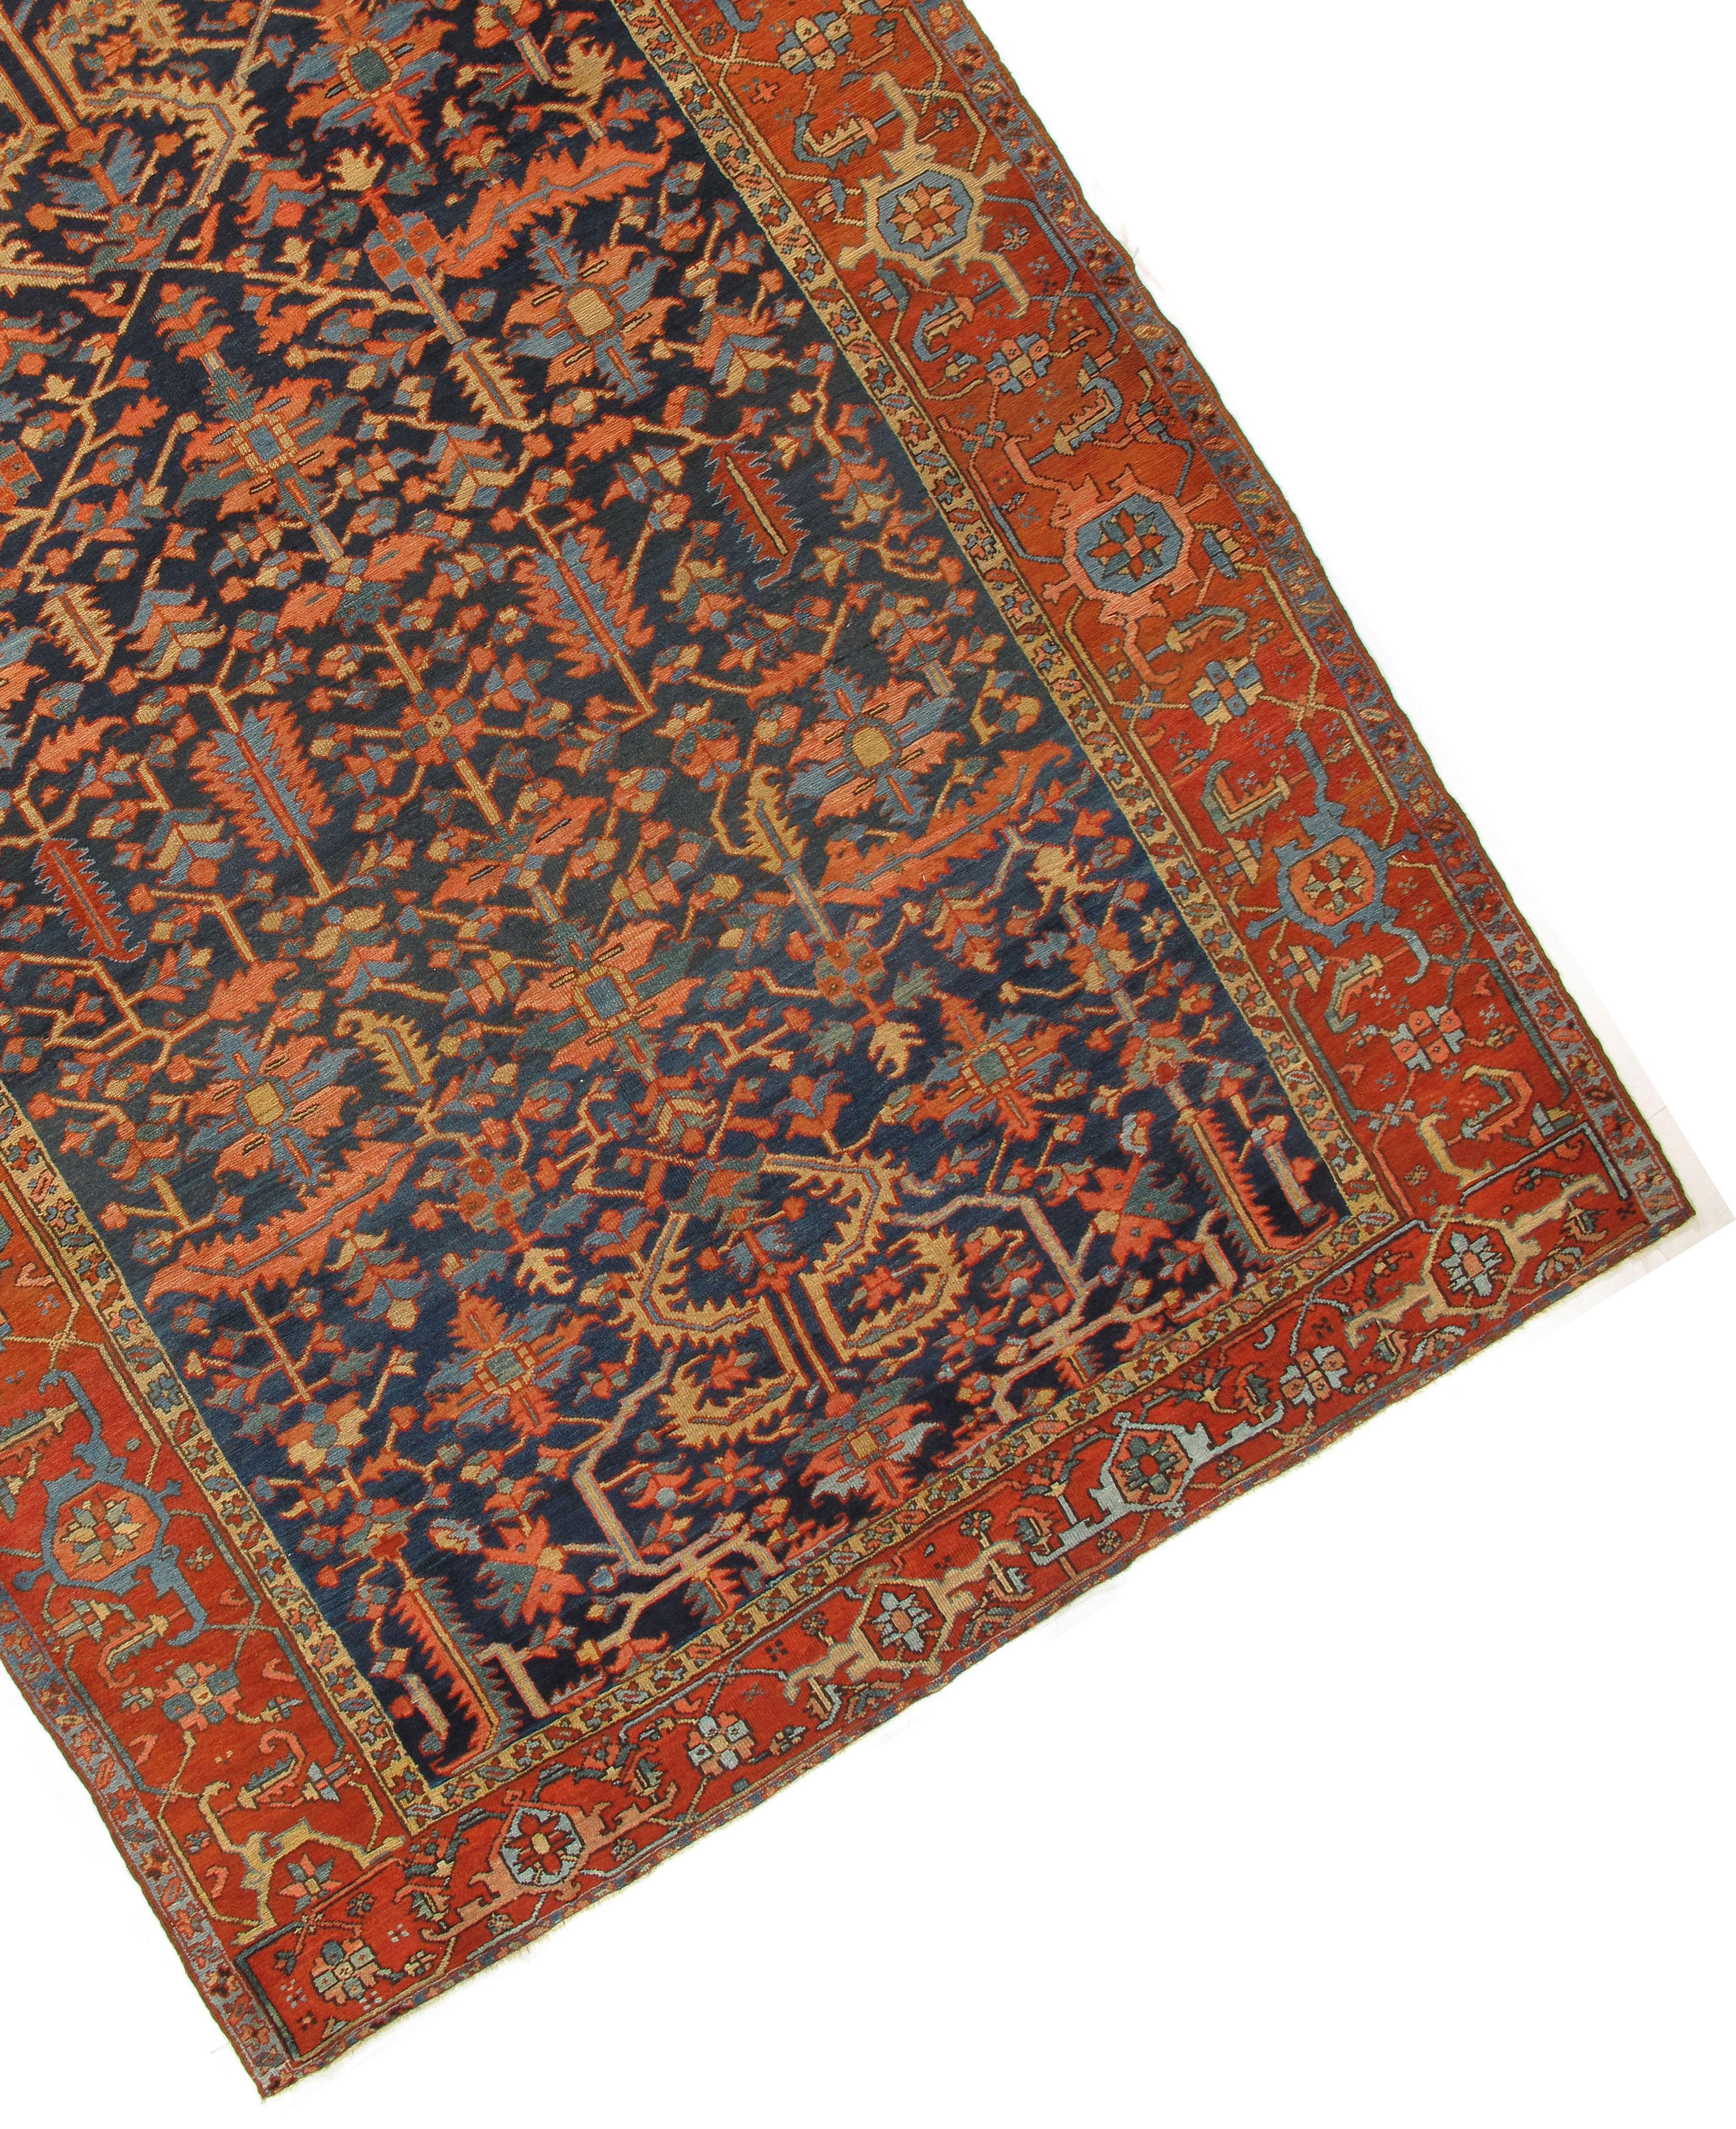 Persian Antique Heriz Rug Carpet, circa 1900